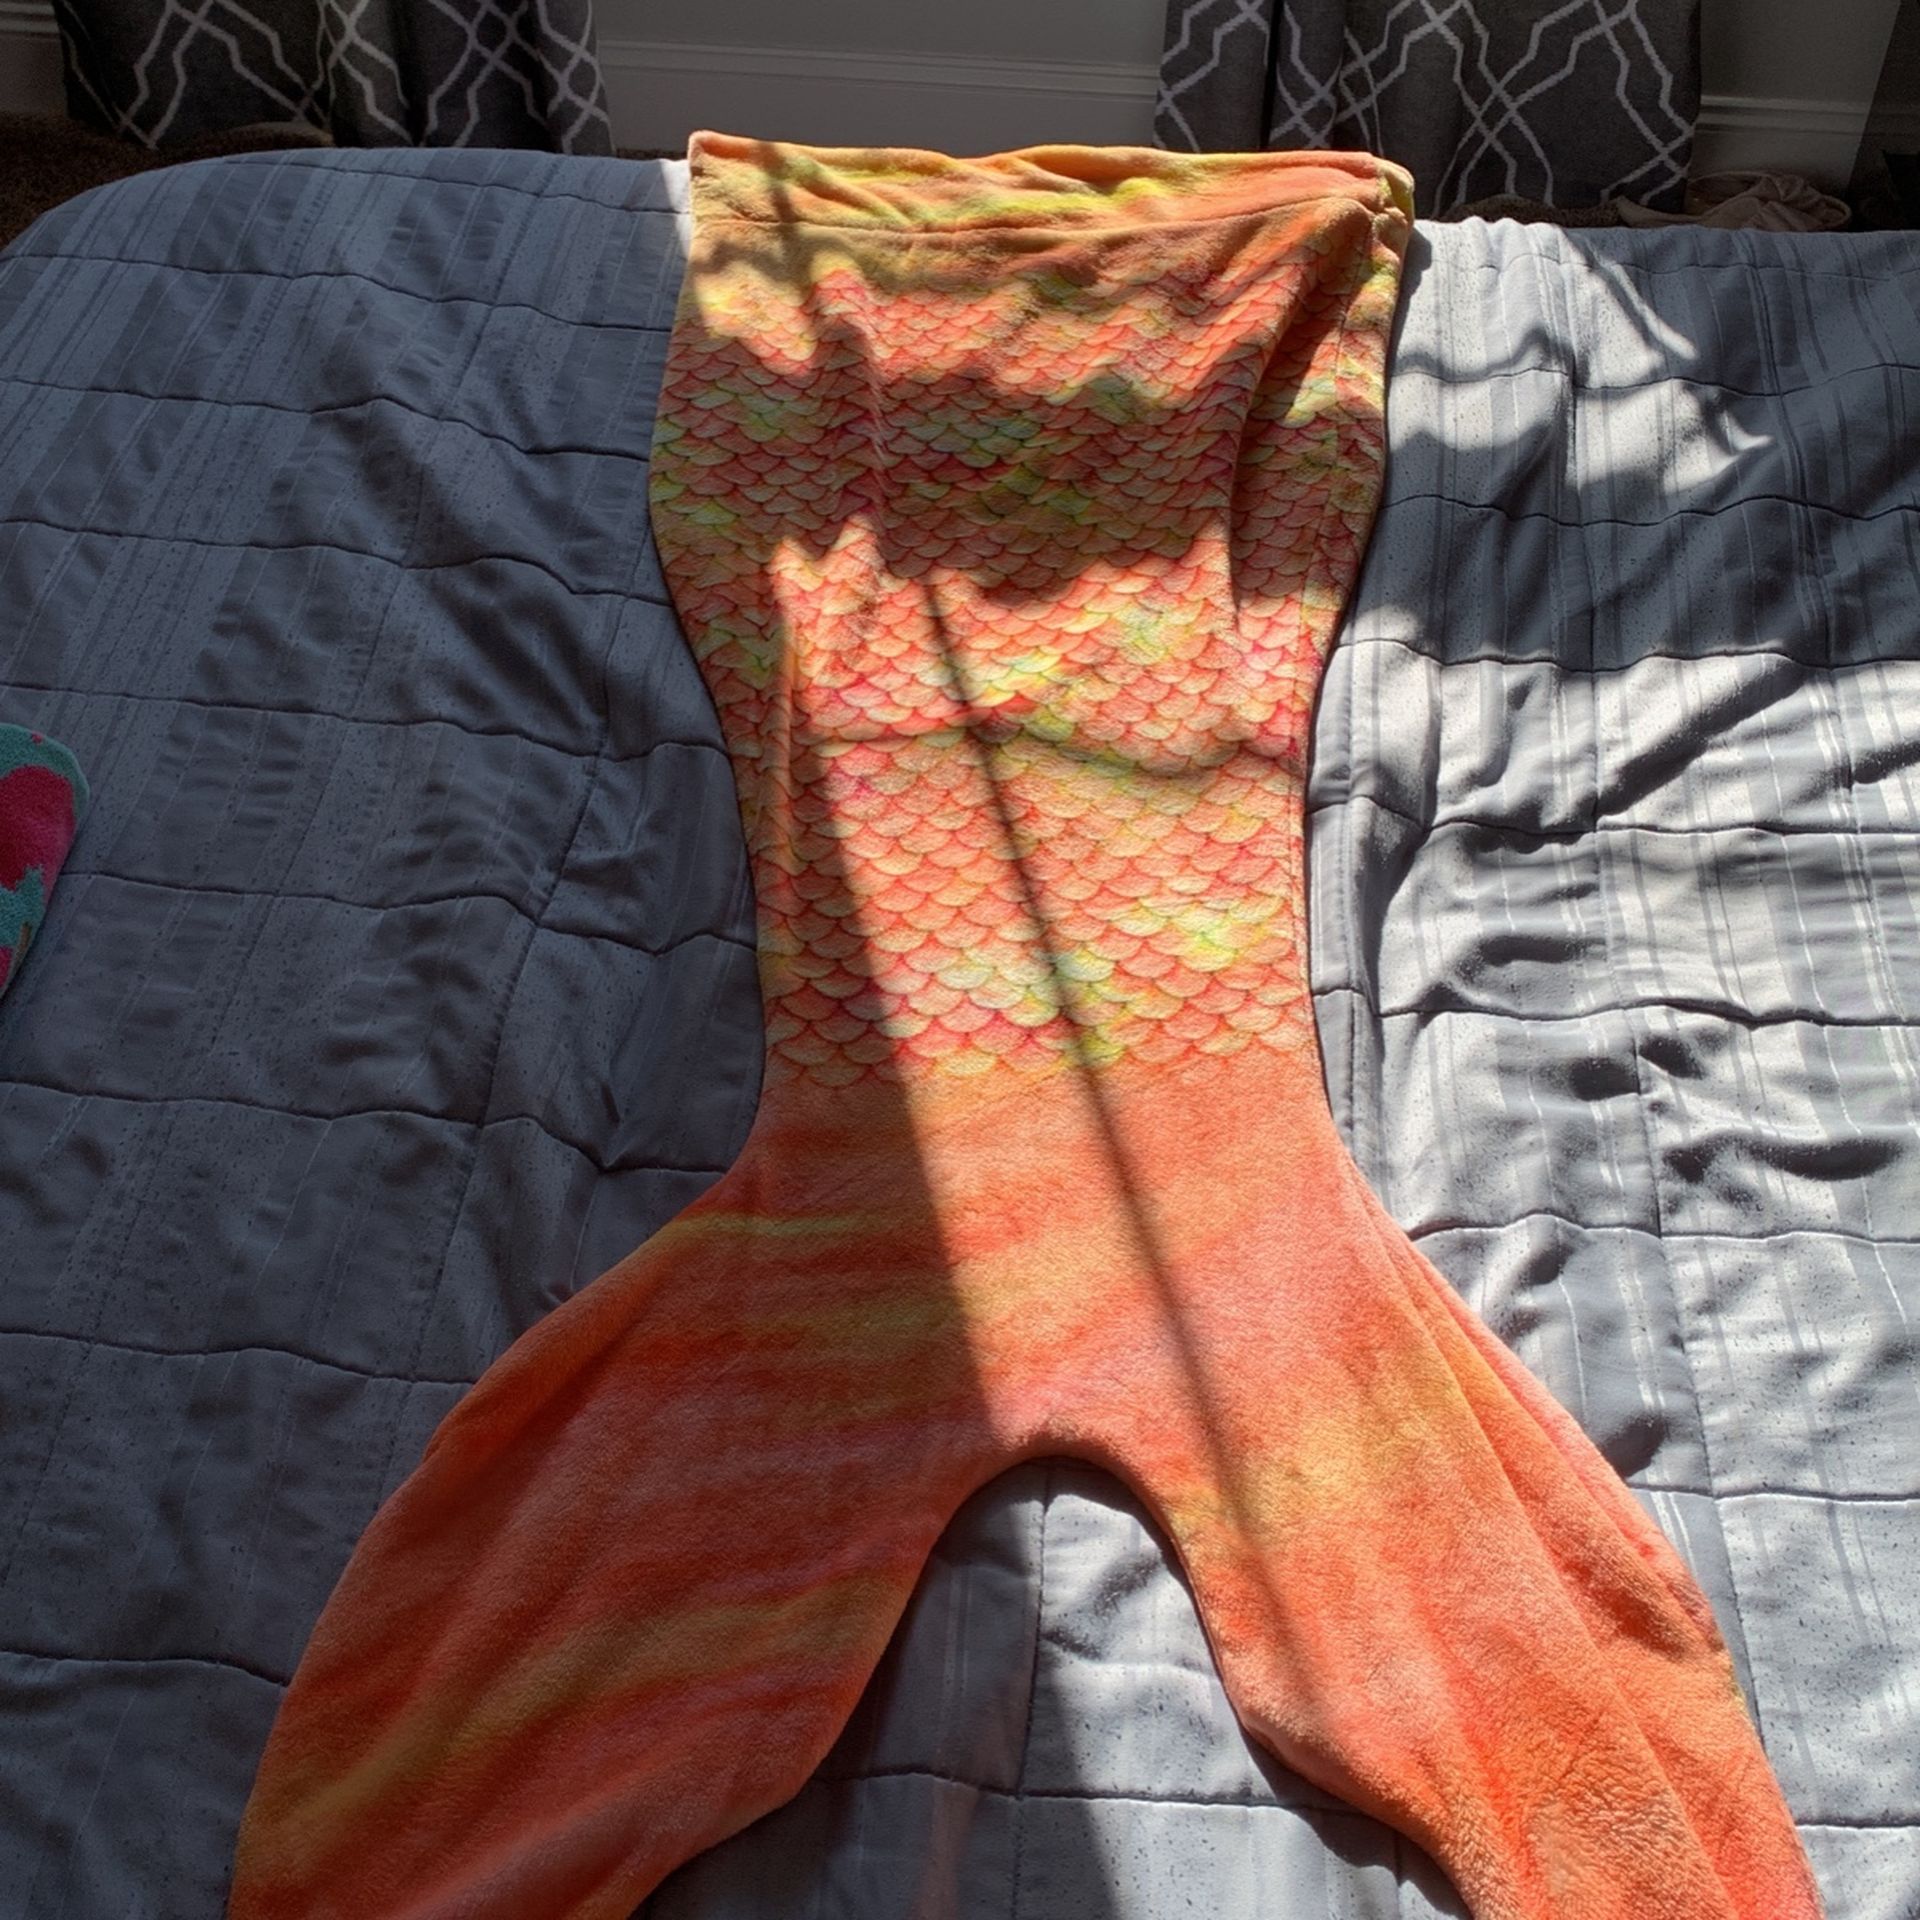 A Mermaid Tail Blanket